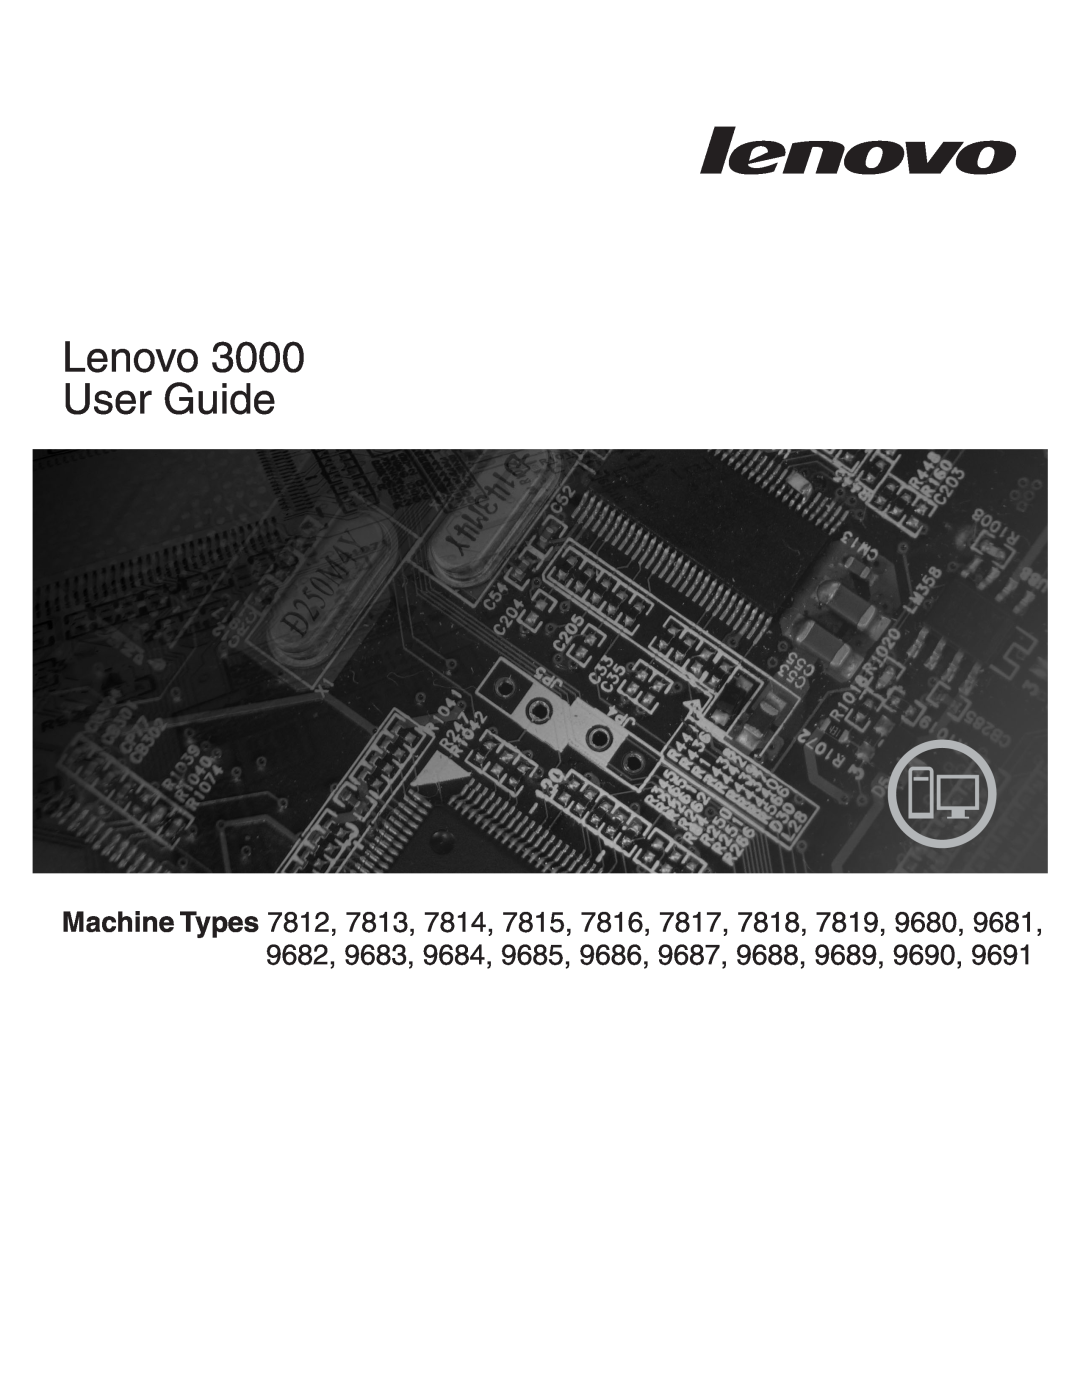 Lenovo 9689, 9683, 9684, 9685, 9682, 9690, 9687, 9680, 9686, 9688, 9681, 9691 7812, 7817, 7815, 7816, 7818, 7819 manual Lenovo User Guide 